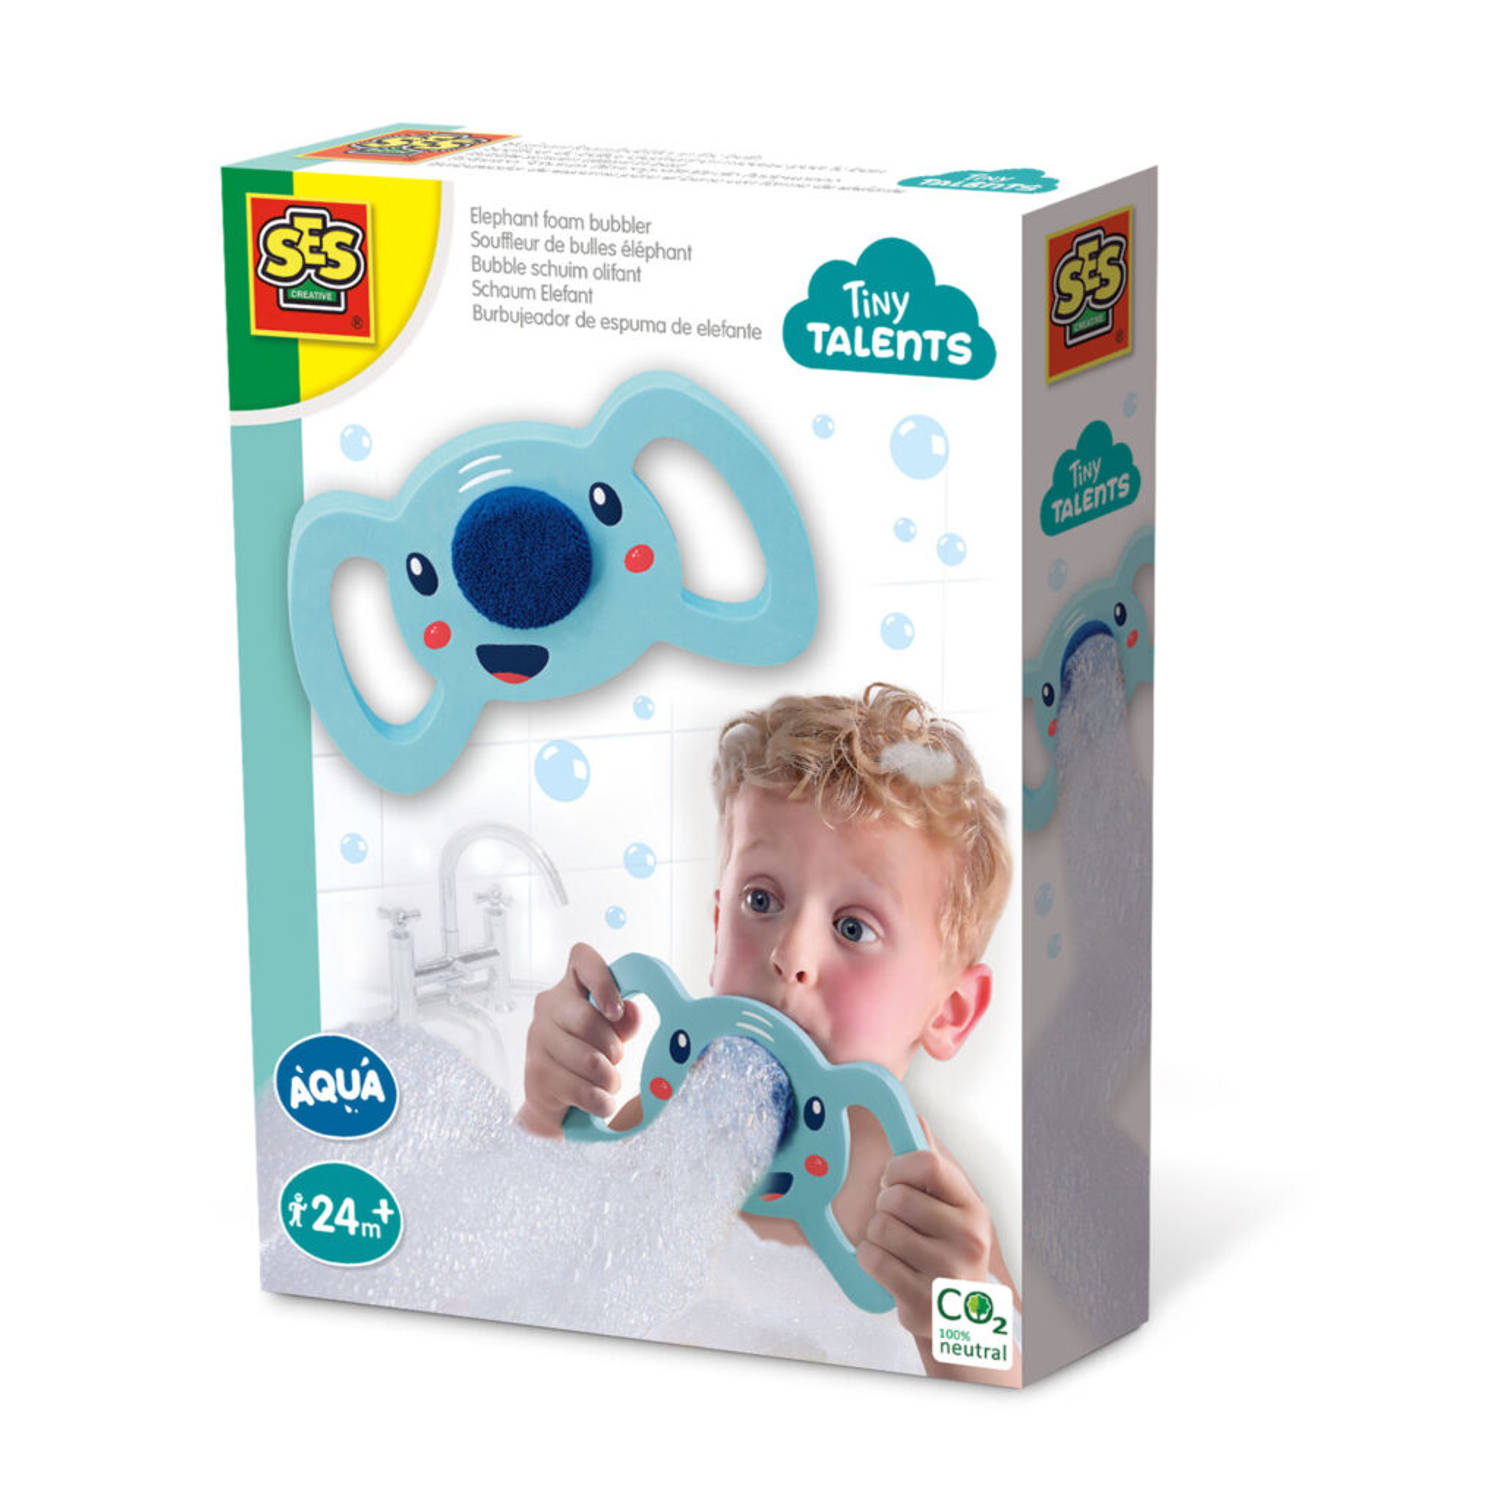 SES - Tiny Talents - Bubble schuim olifant in bad - maak bubbels met je badschuim, shampoo of douchegel - blijft drijven in bad